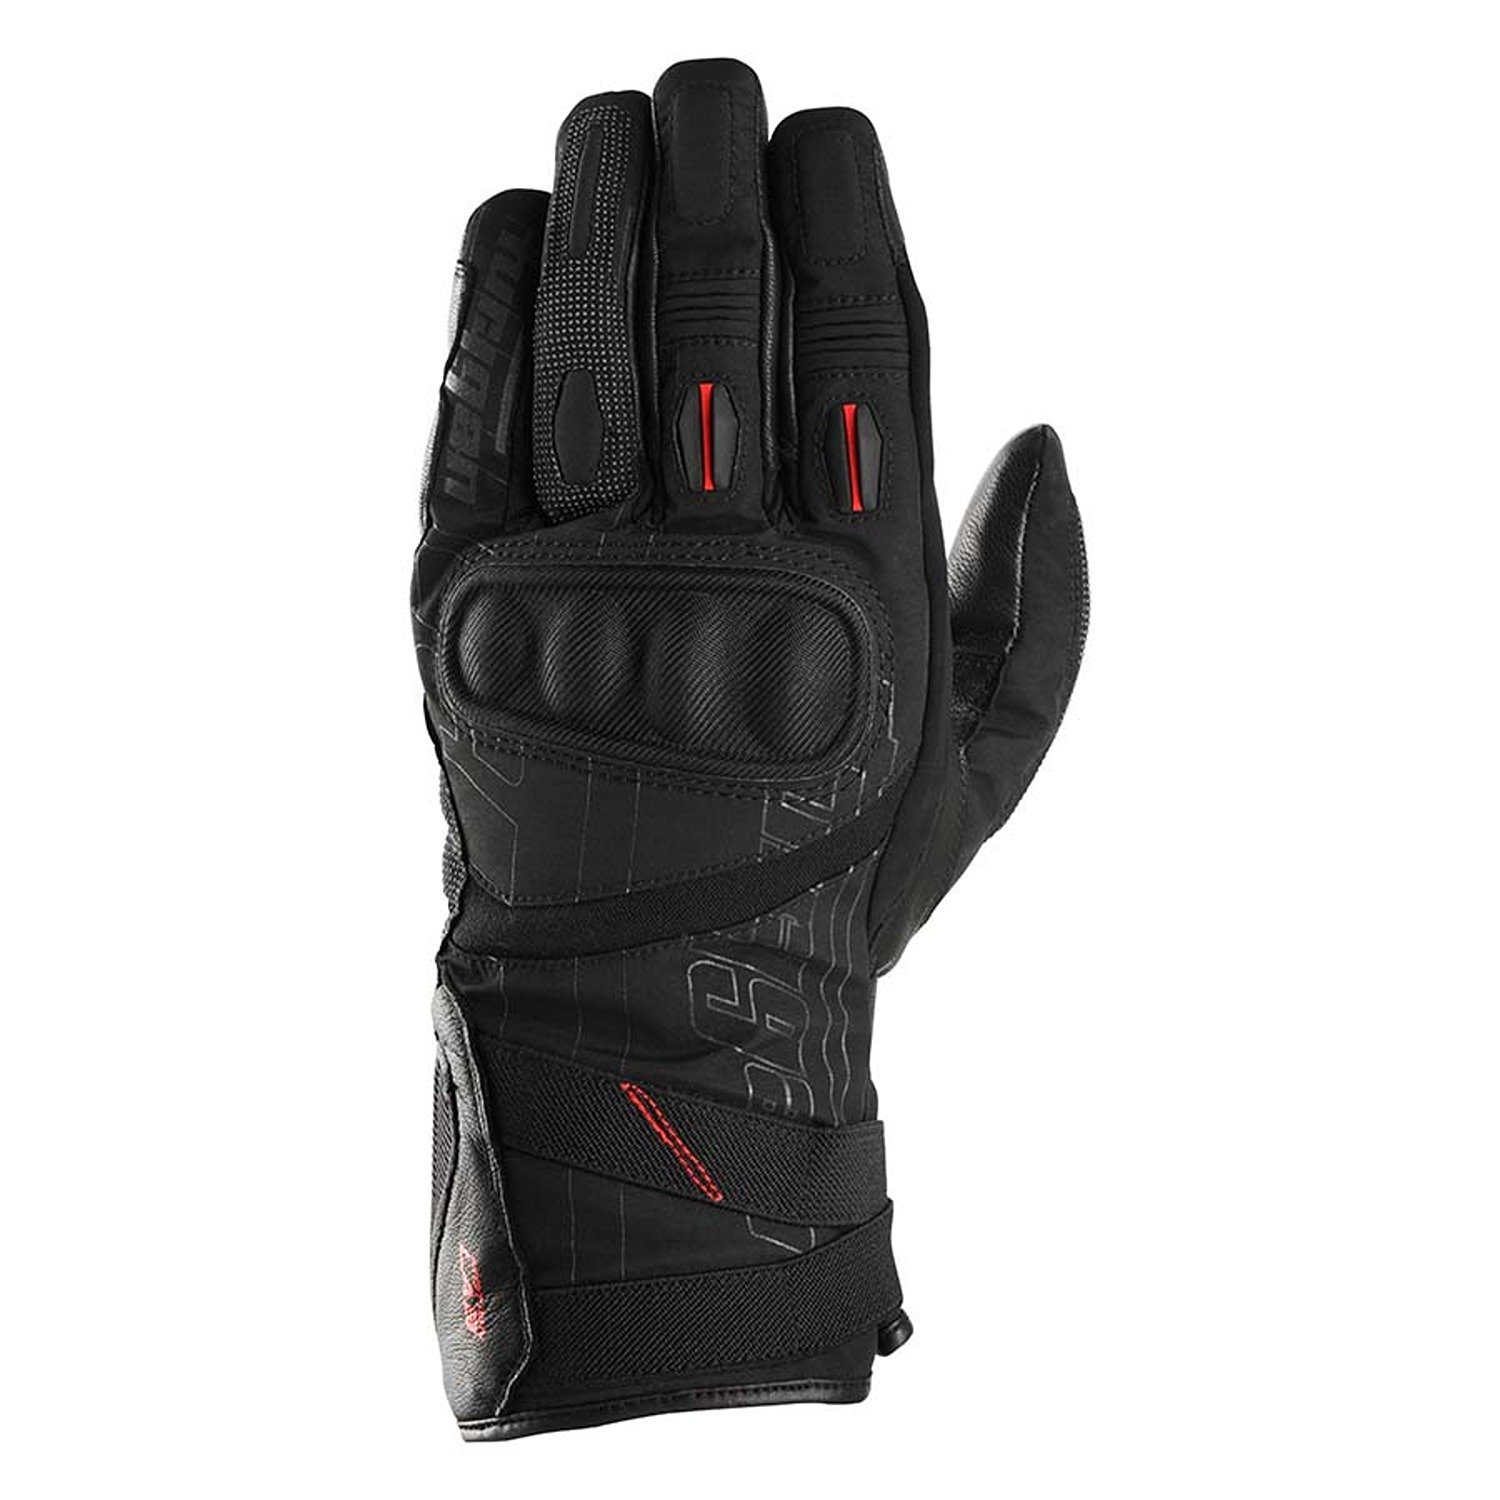 Image of Furygan Nomad Gloves Black Size S EN